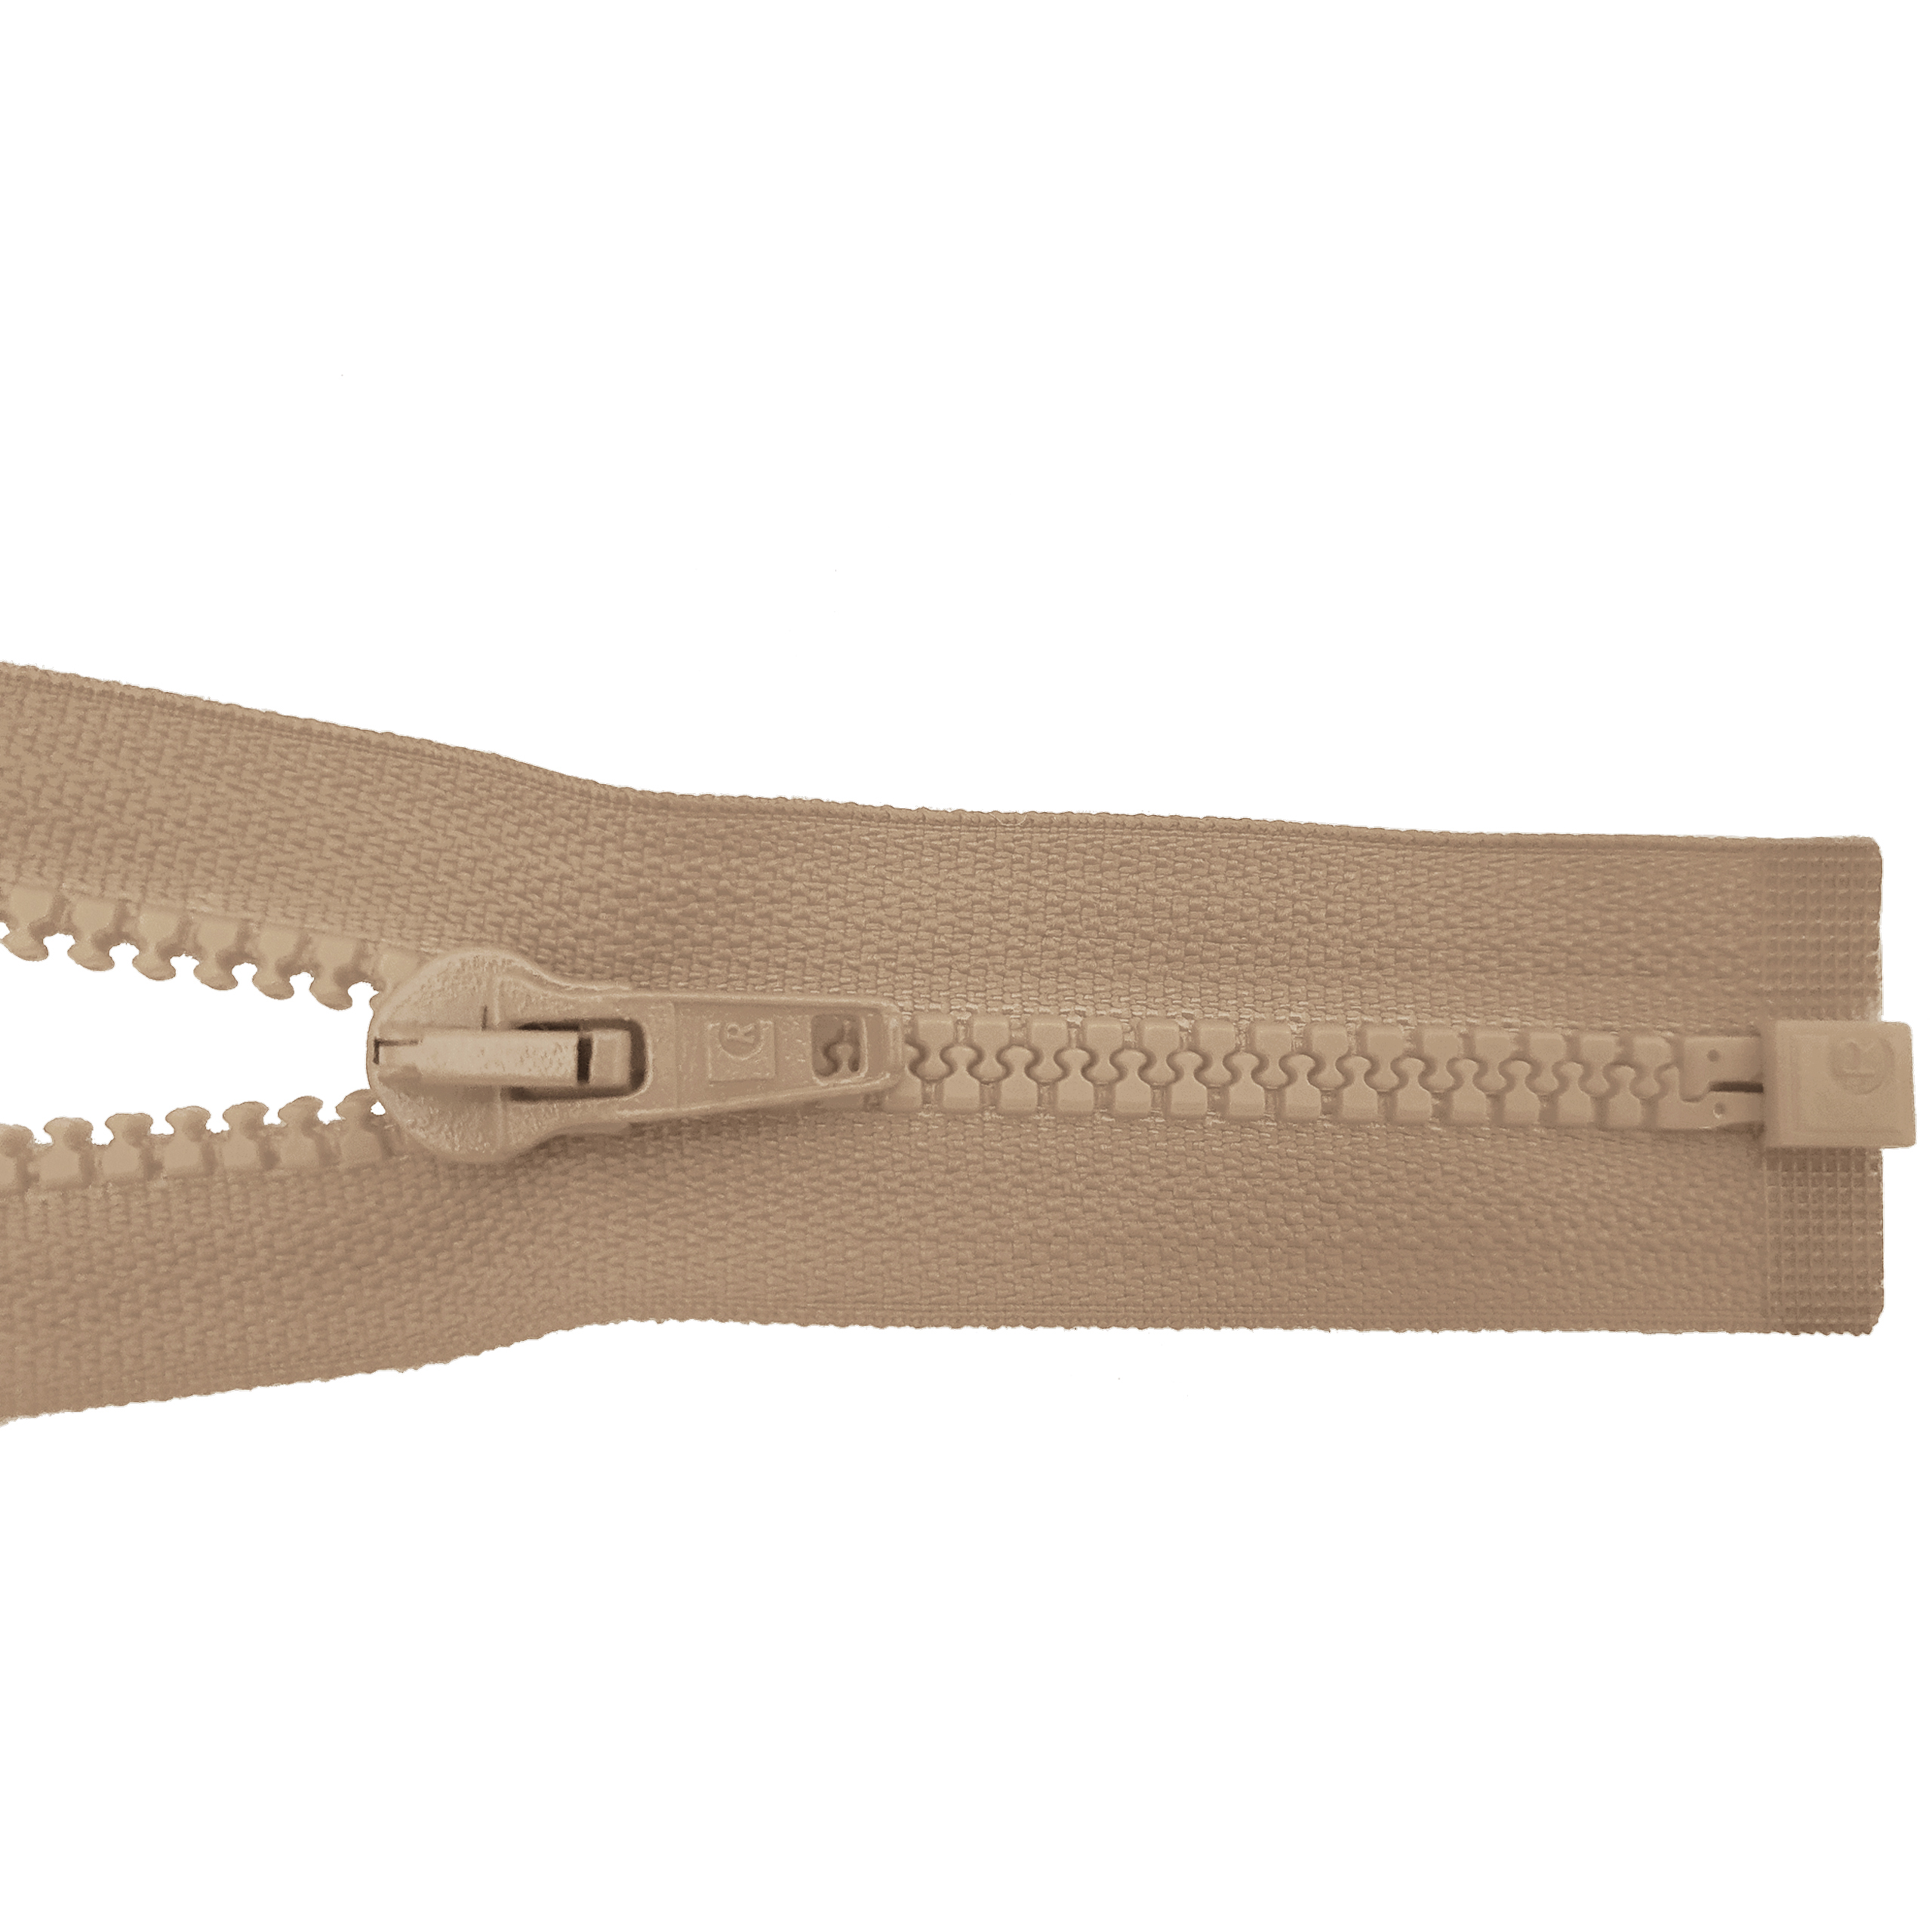 Reißverschluss 80cm, teilbar, Kstoff Zähne breit, sand, hochwertiger Marken-Reißverschluss von Rubi/Barcelona